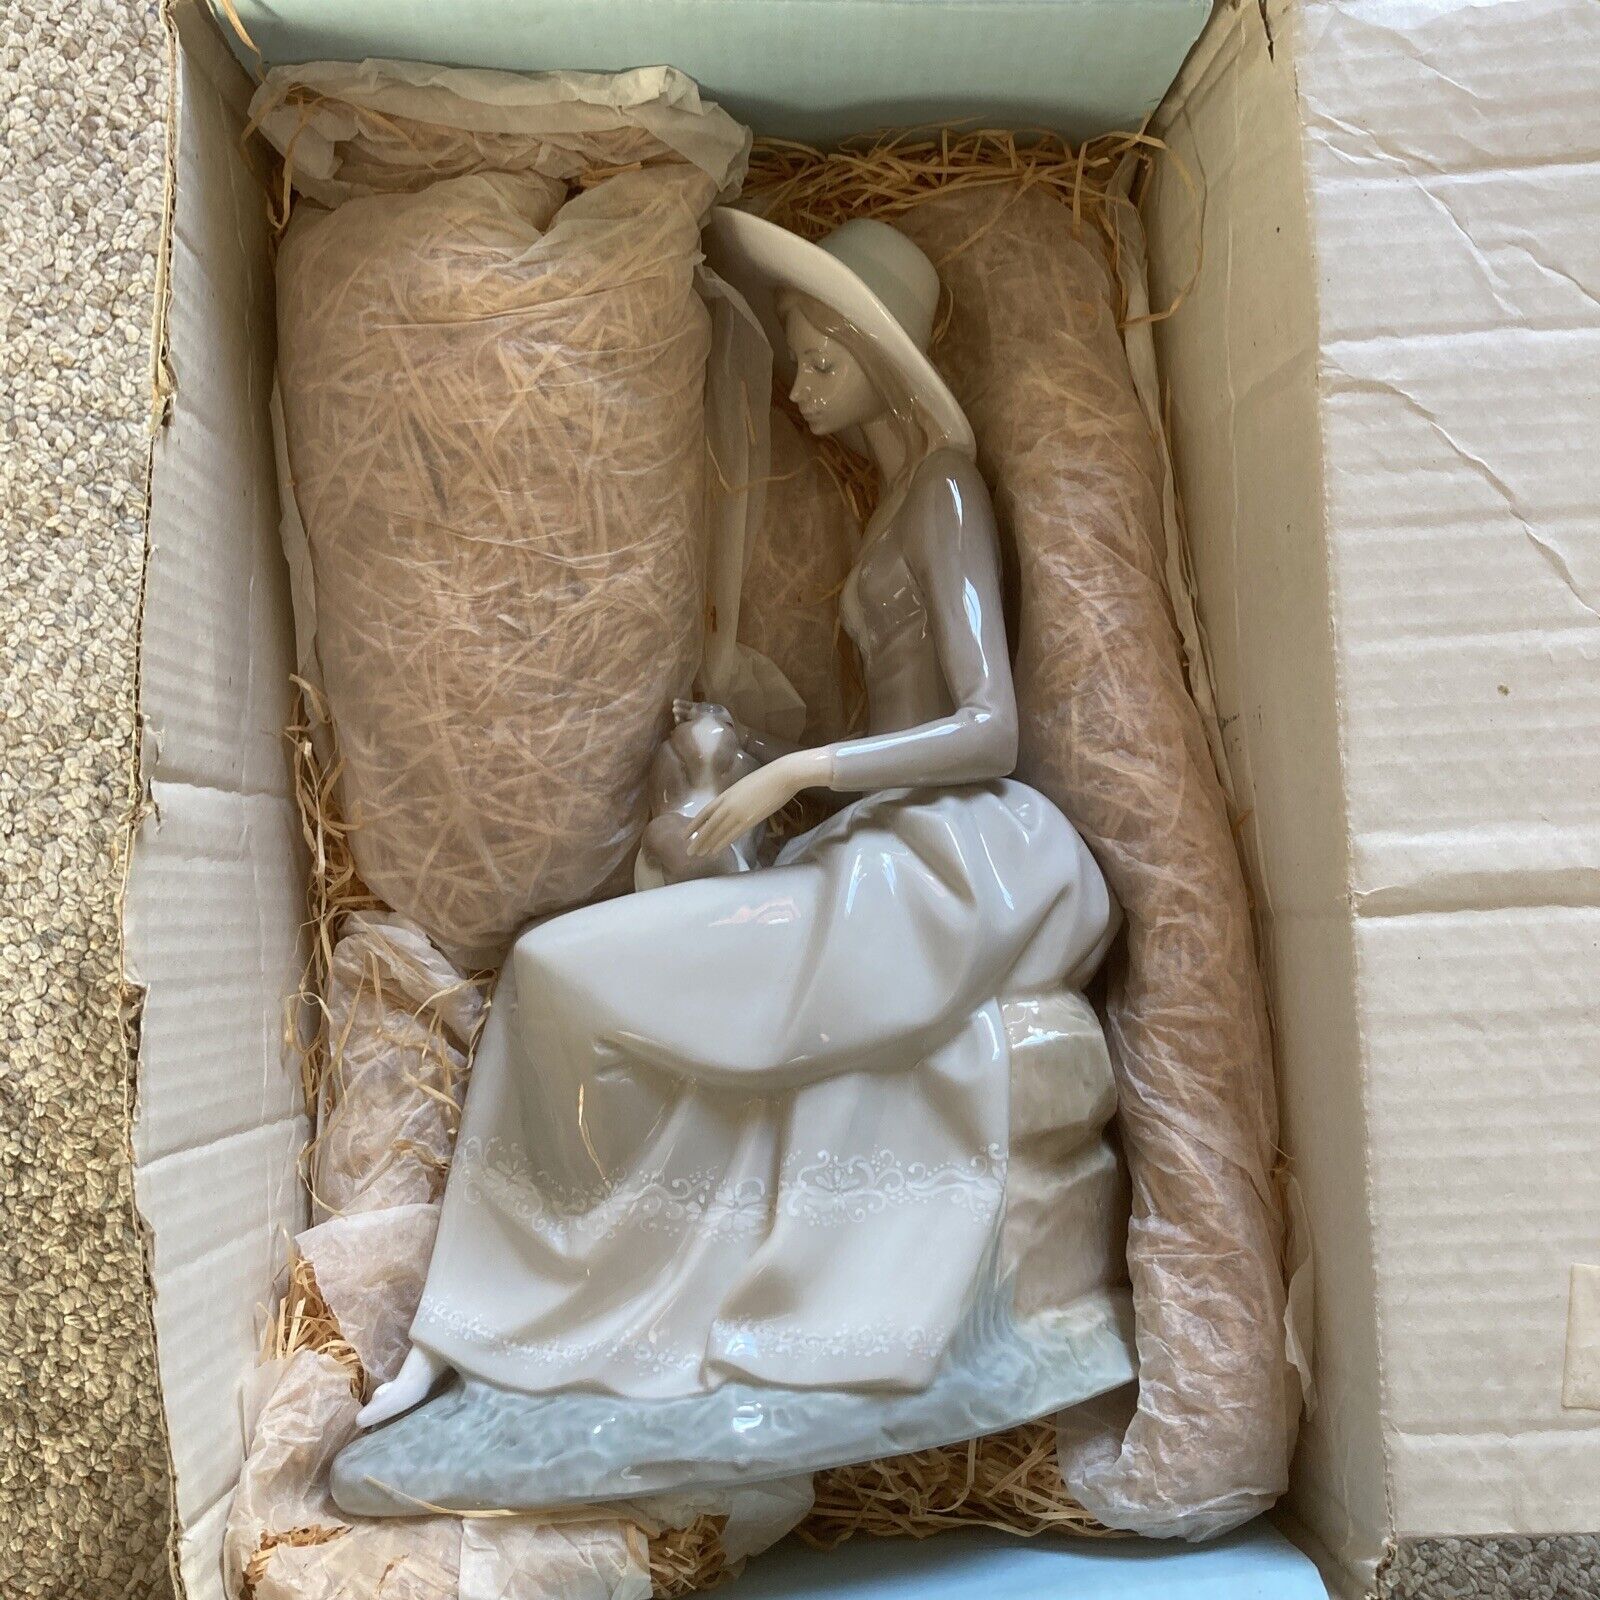 1972 Lladro Retired Figurine Armonia Con Perrito w/ Original Box & Packing #4806